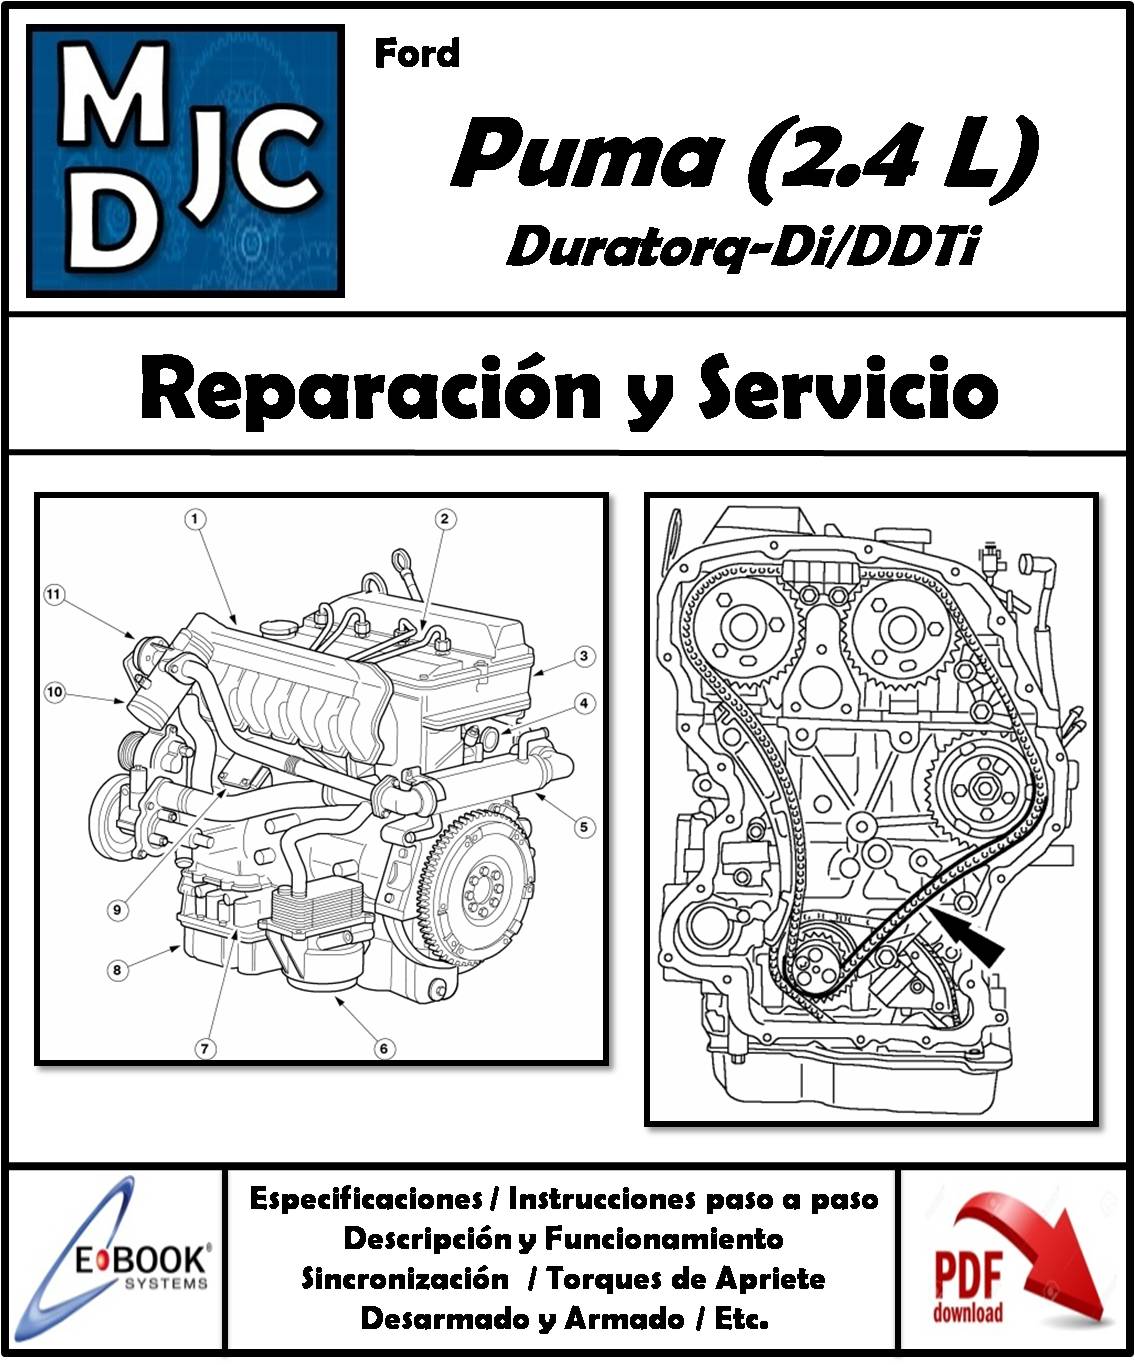 Ford Puma 2.4 L Duratorq-Di/DDTi